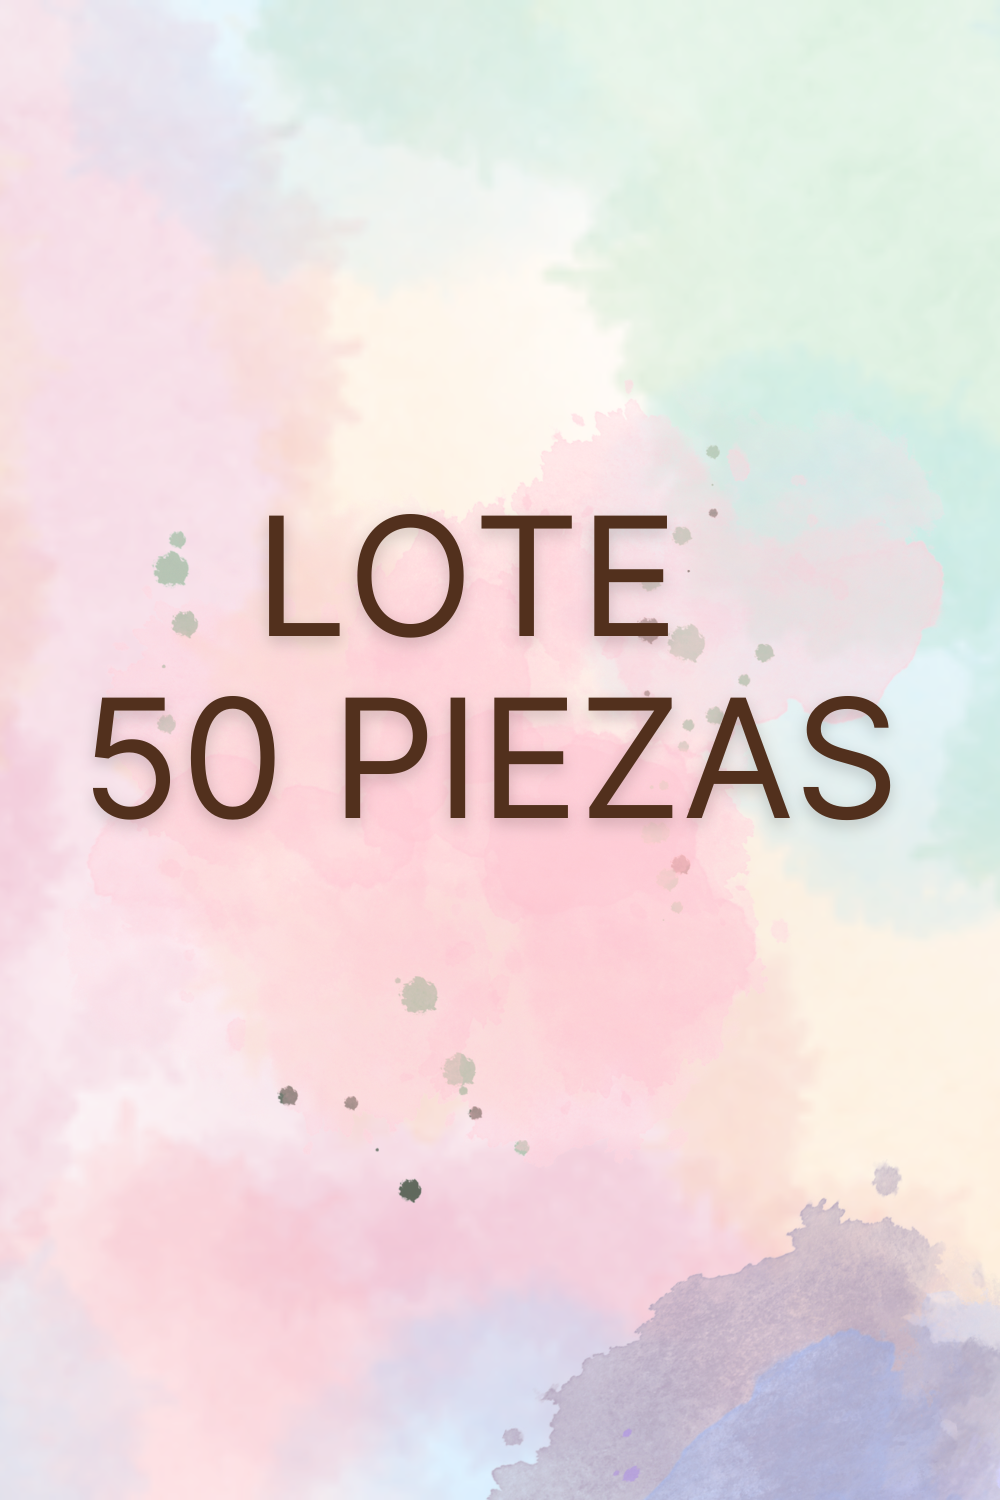 LOTES DESDE $35.00 LA PIEZA